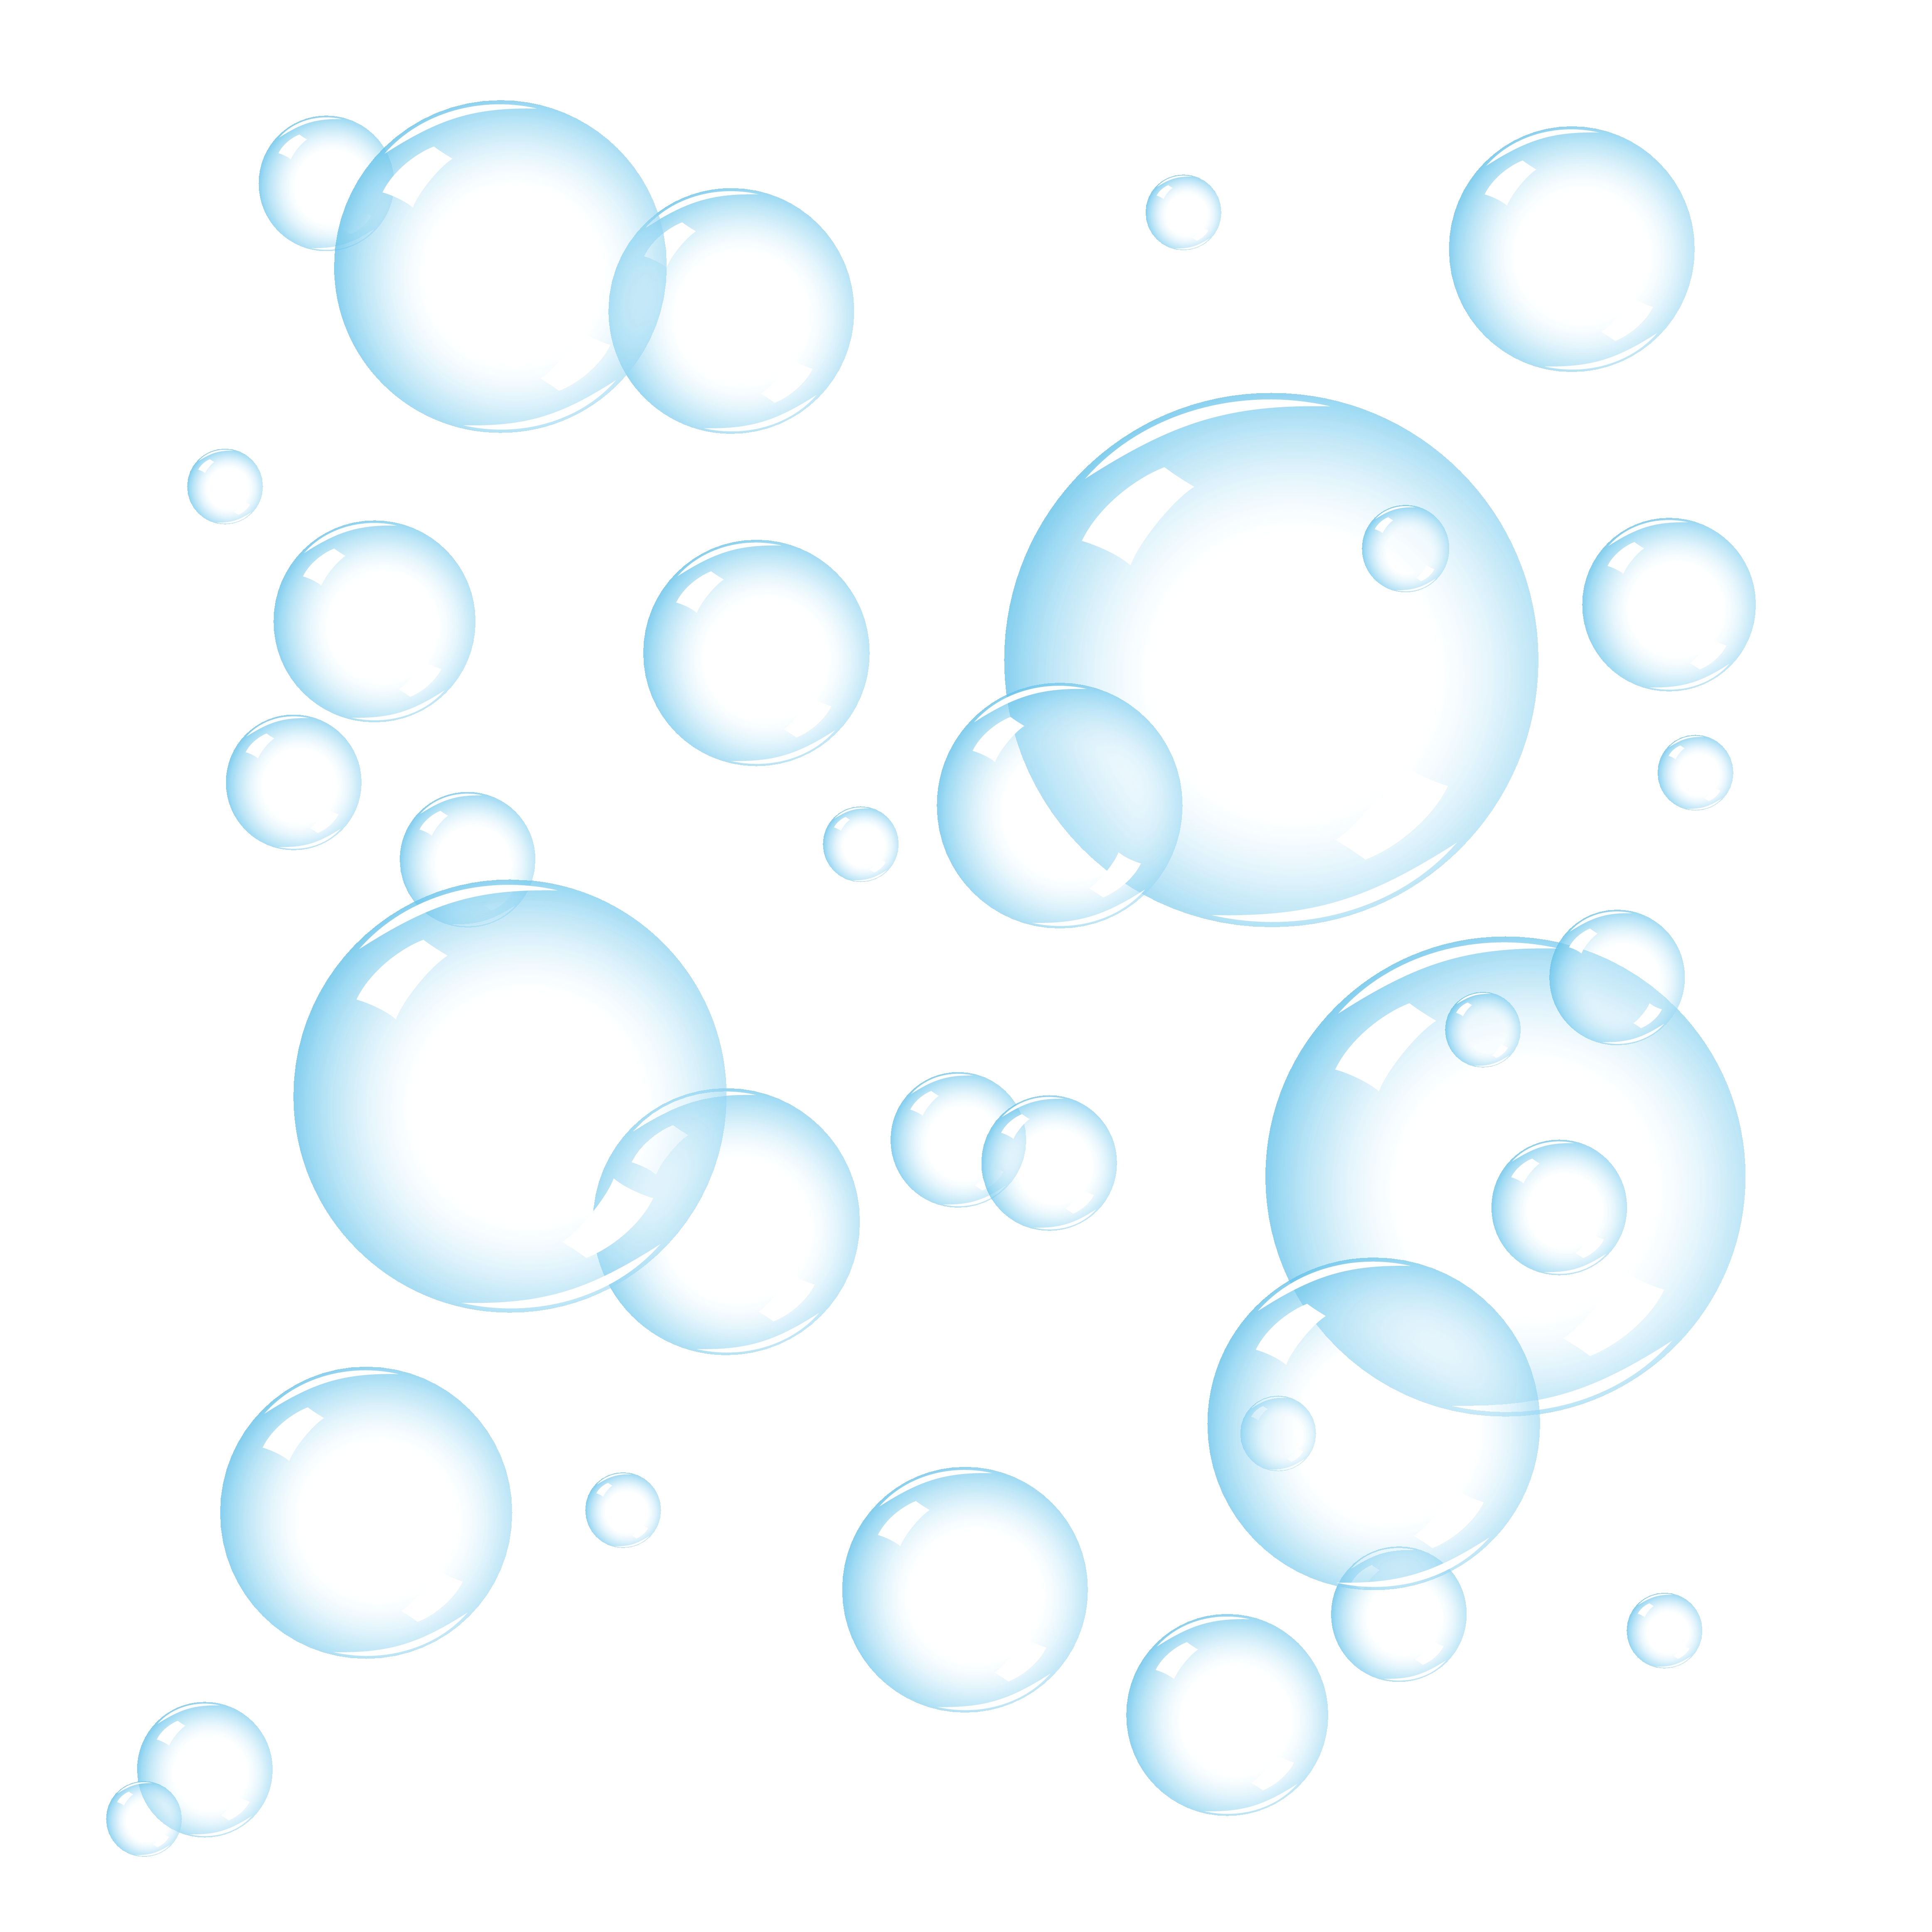 Bubbles pictures clip art 